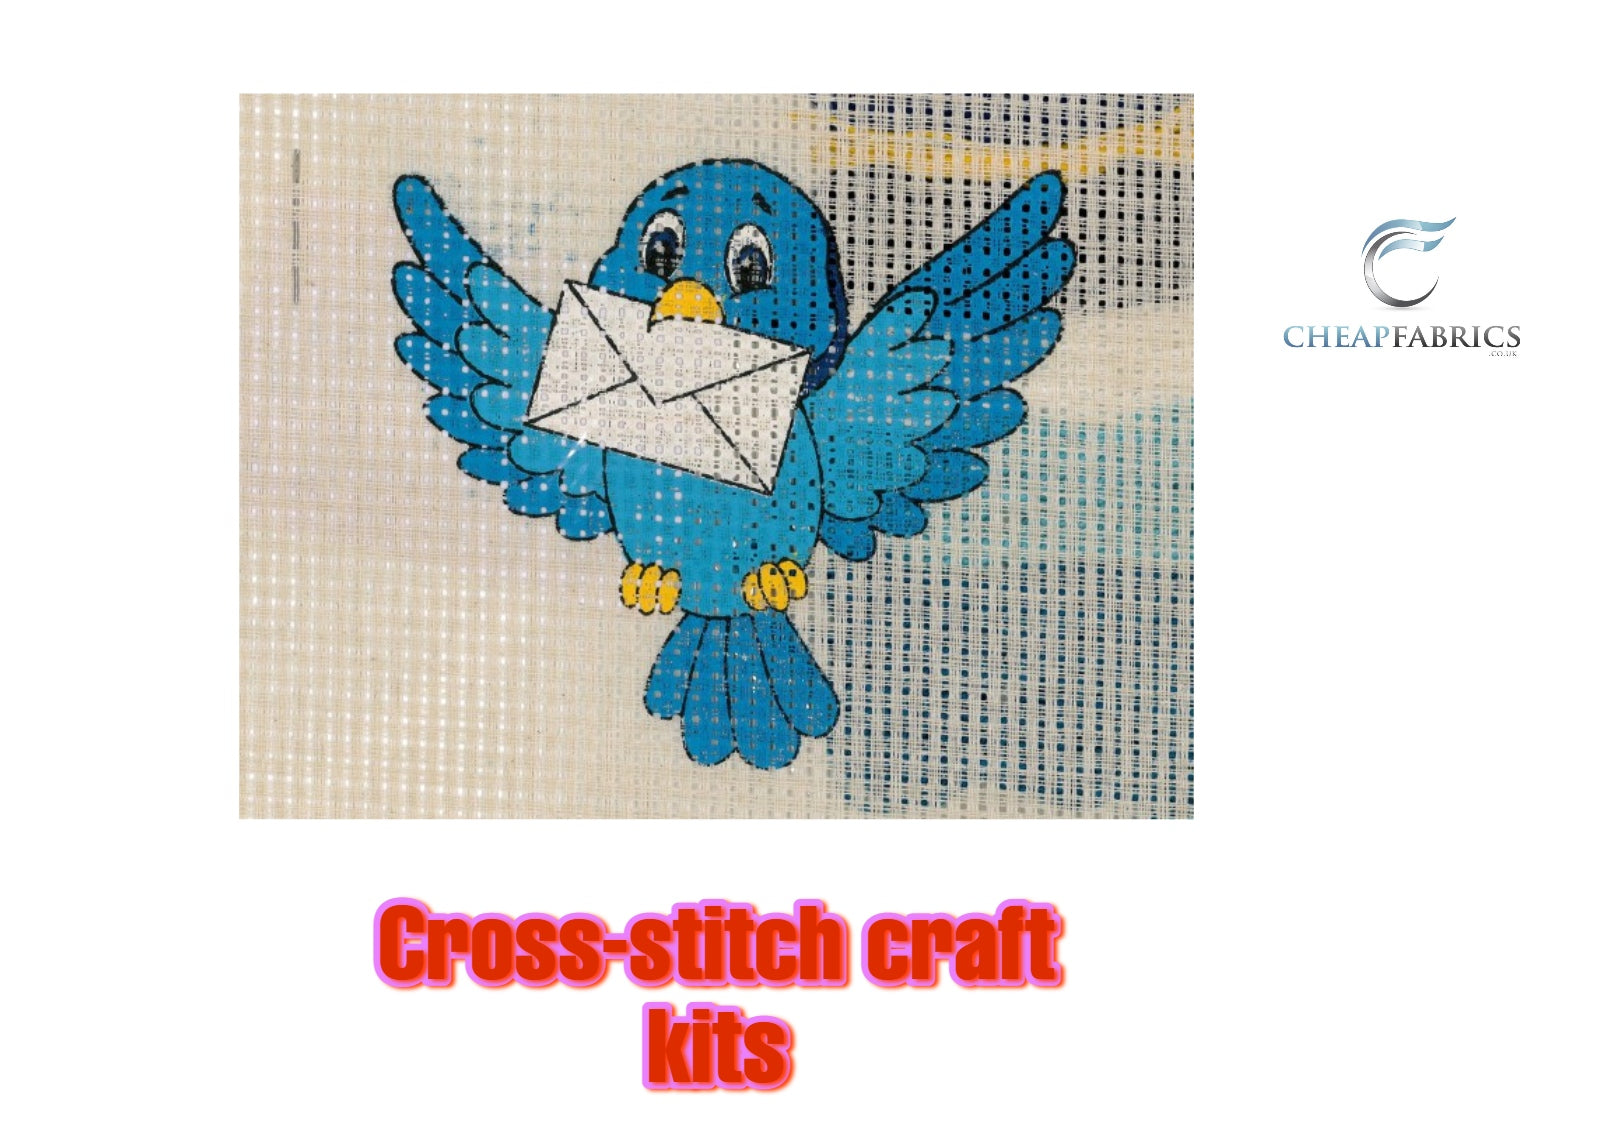 Binca Beginners Cross Stitch Kit - Bird With A Message